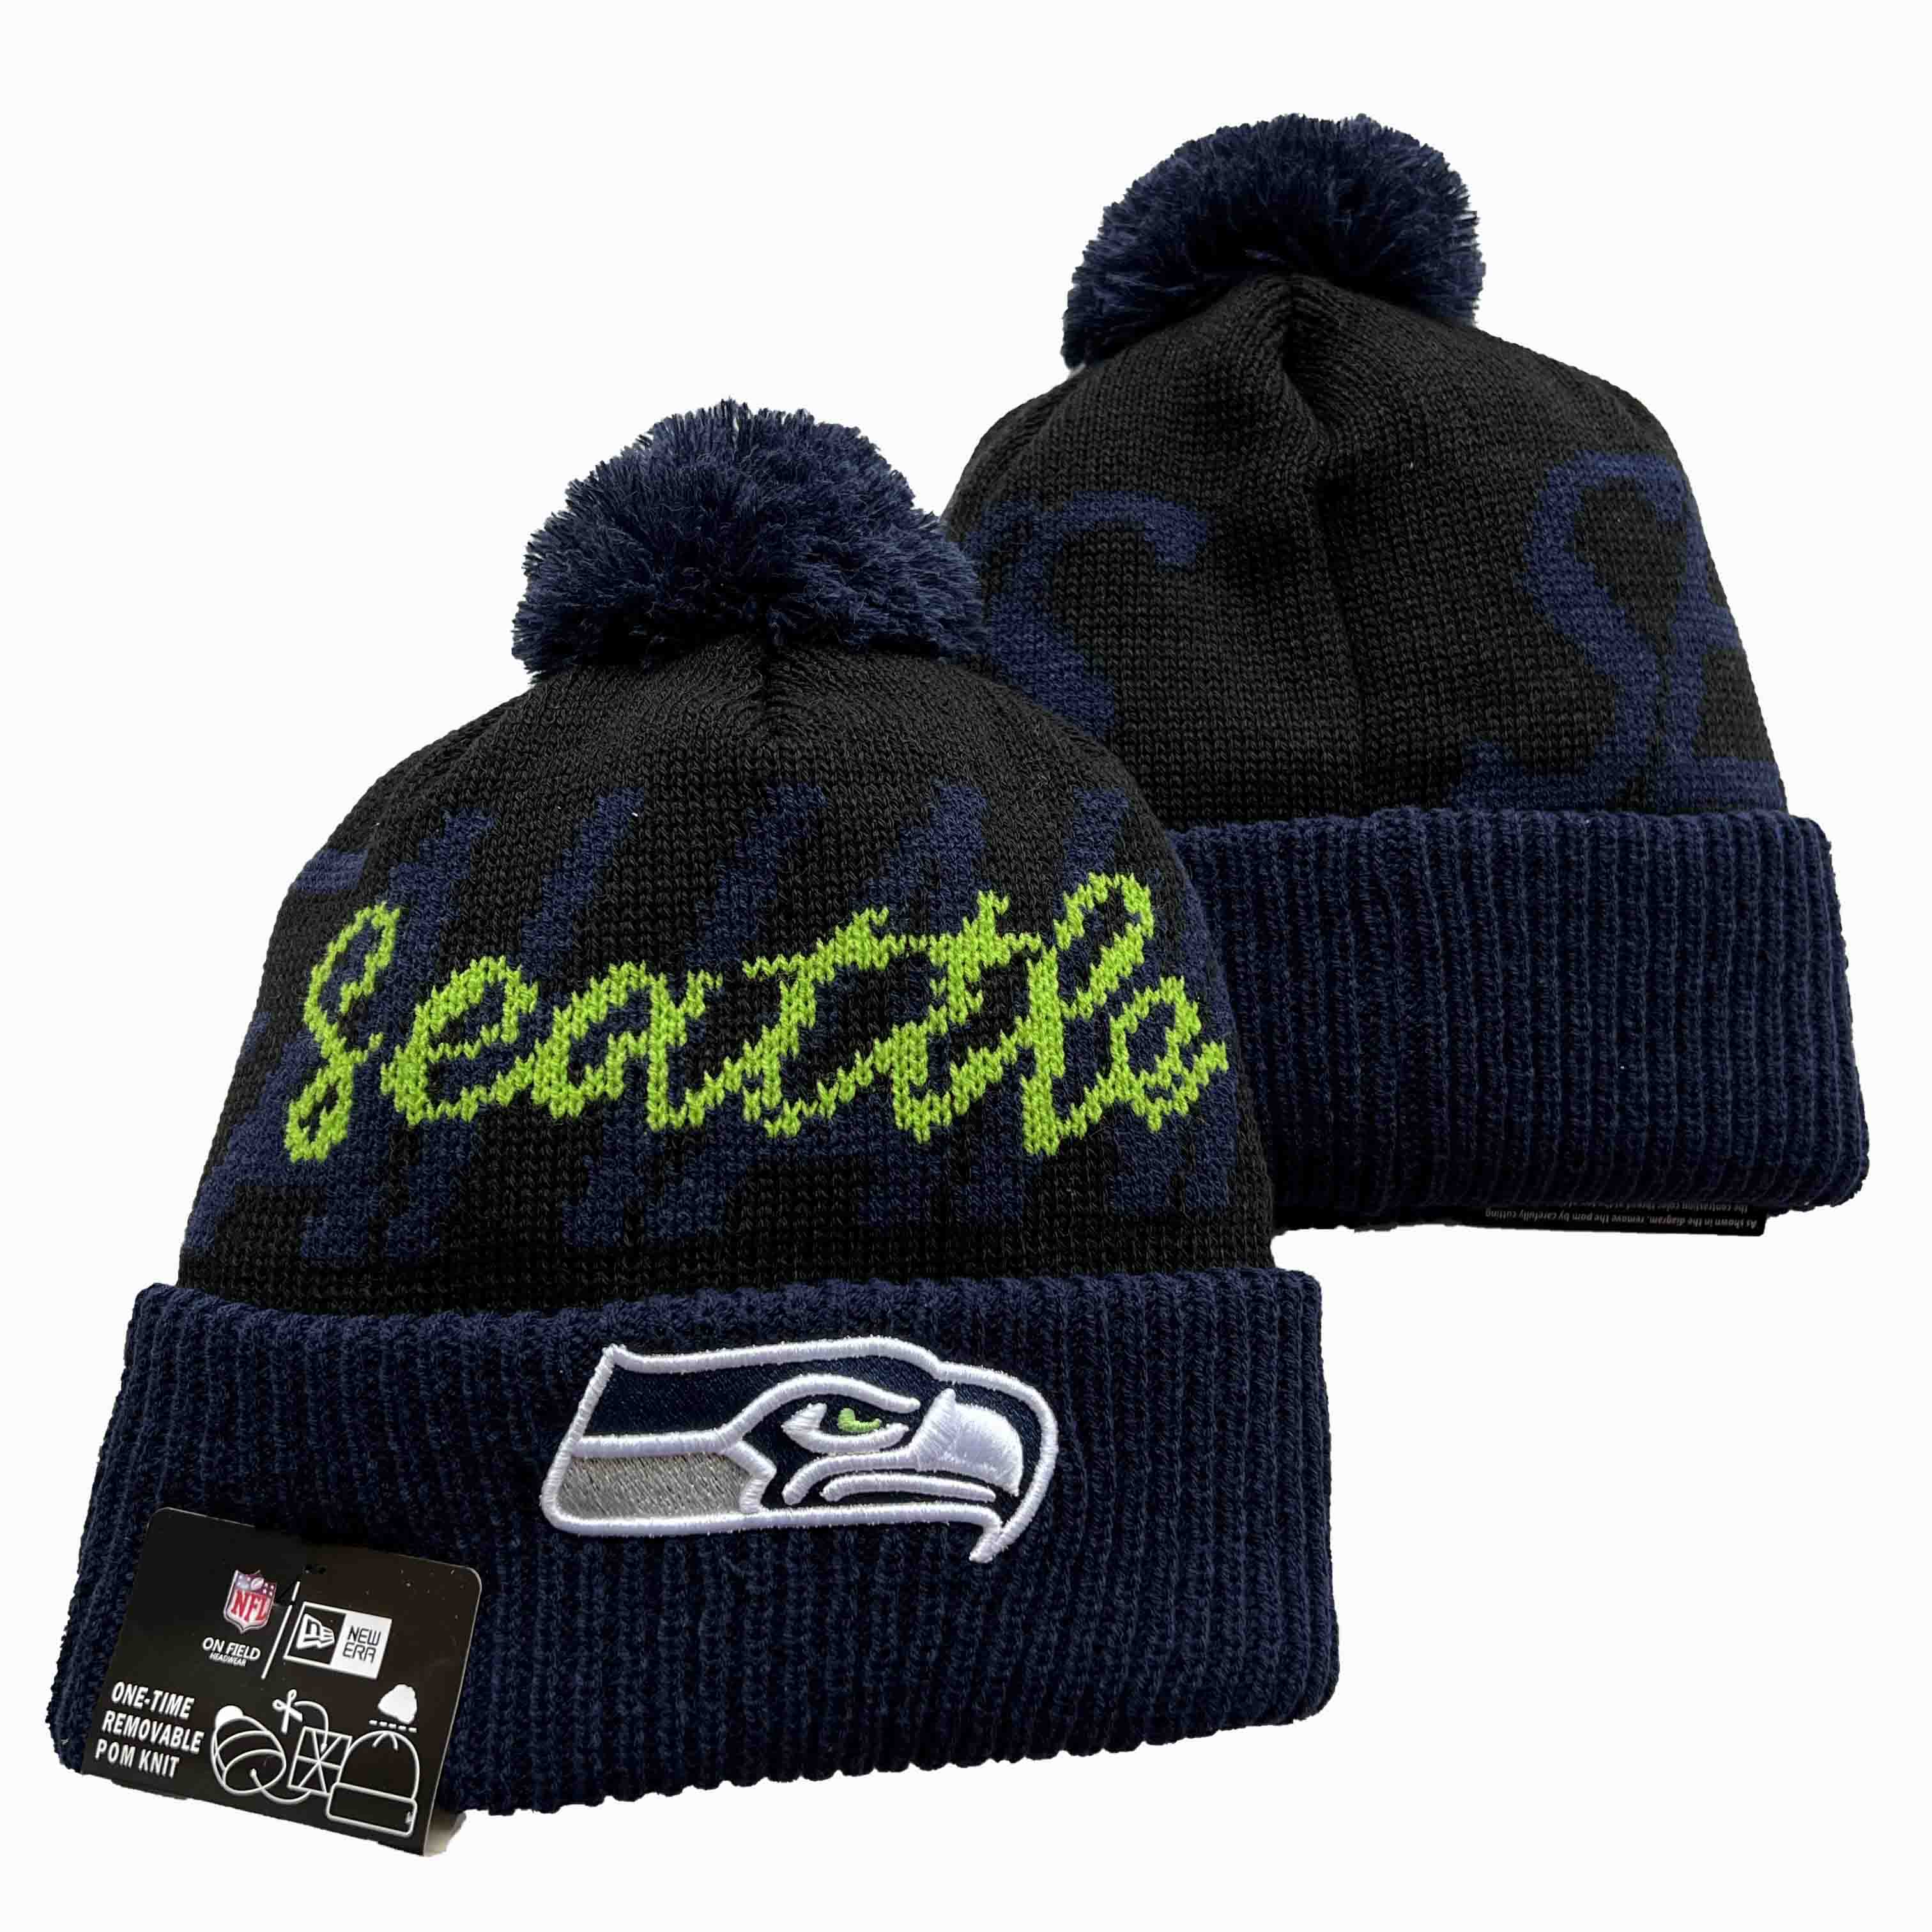 NFL Seattle Seahawks Beanies Knit Hats-YD1216